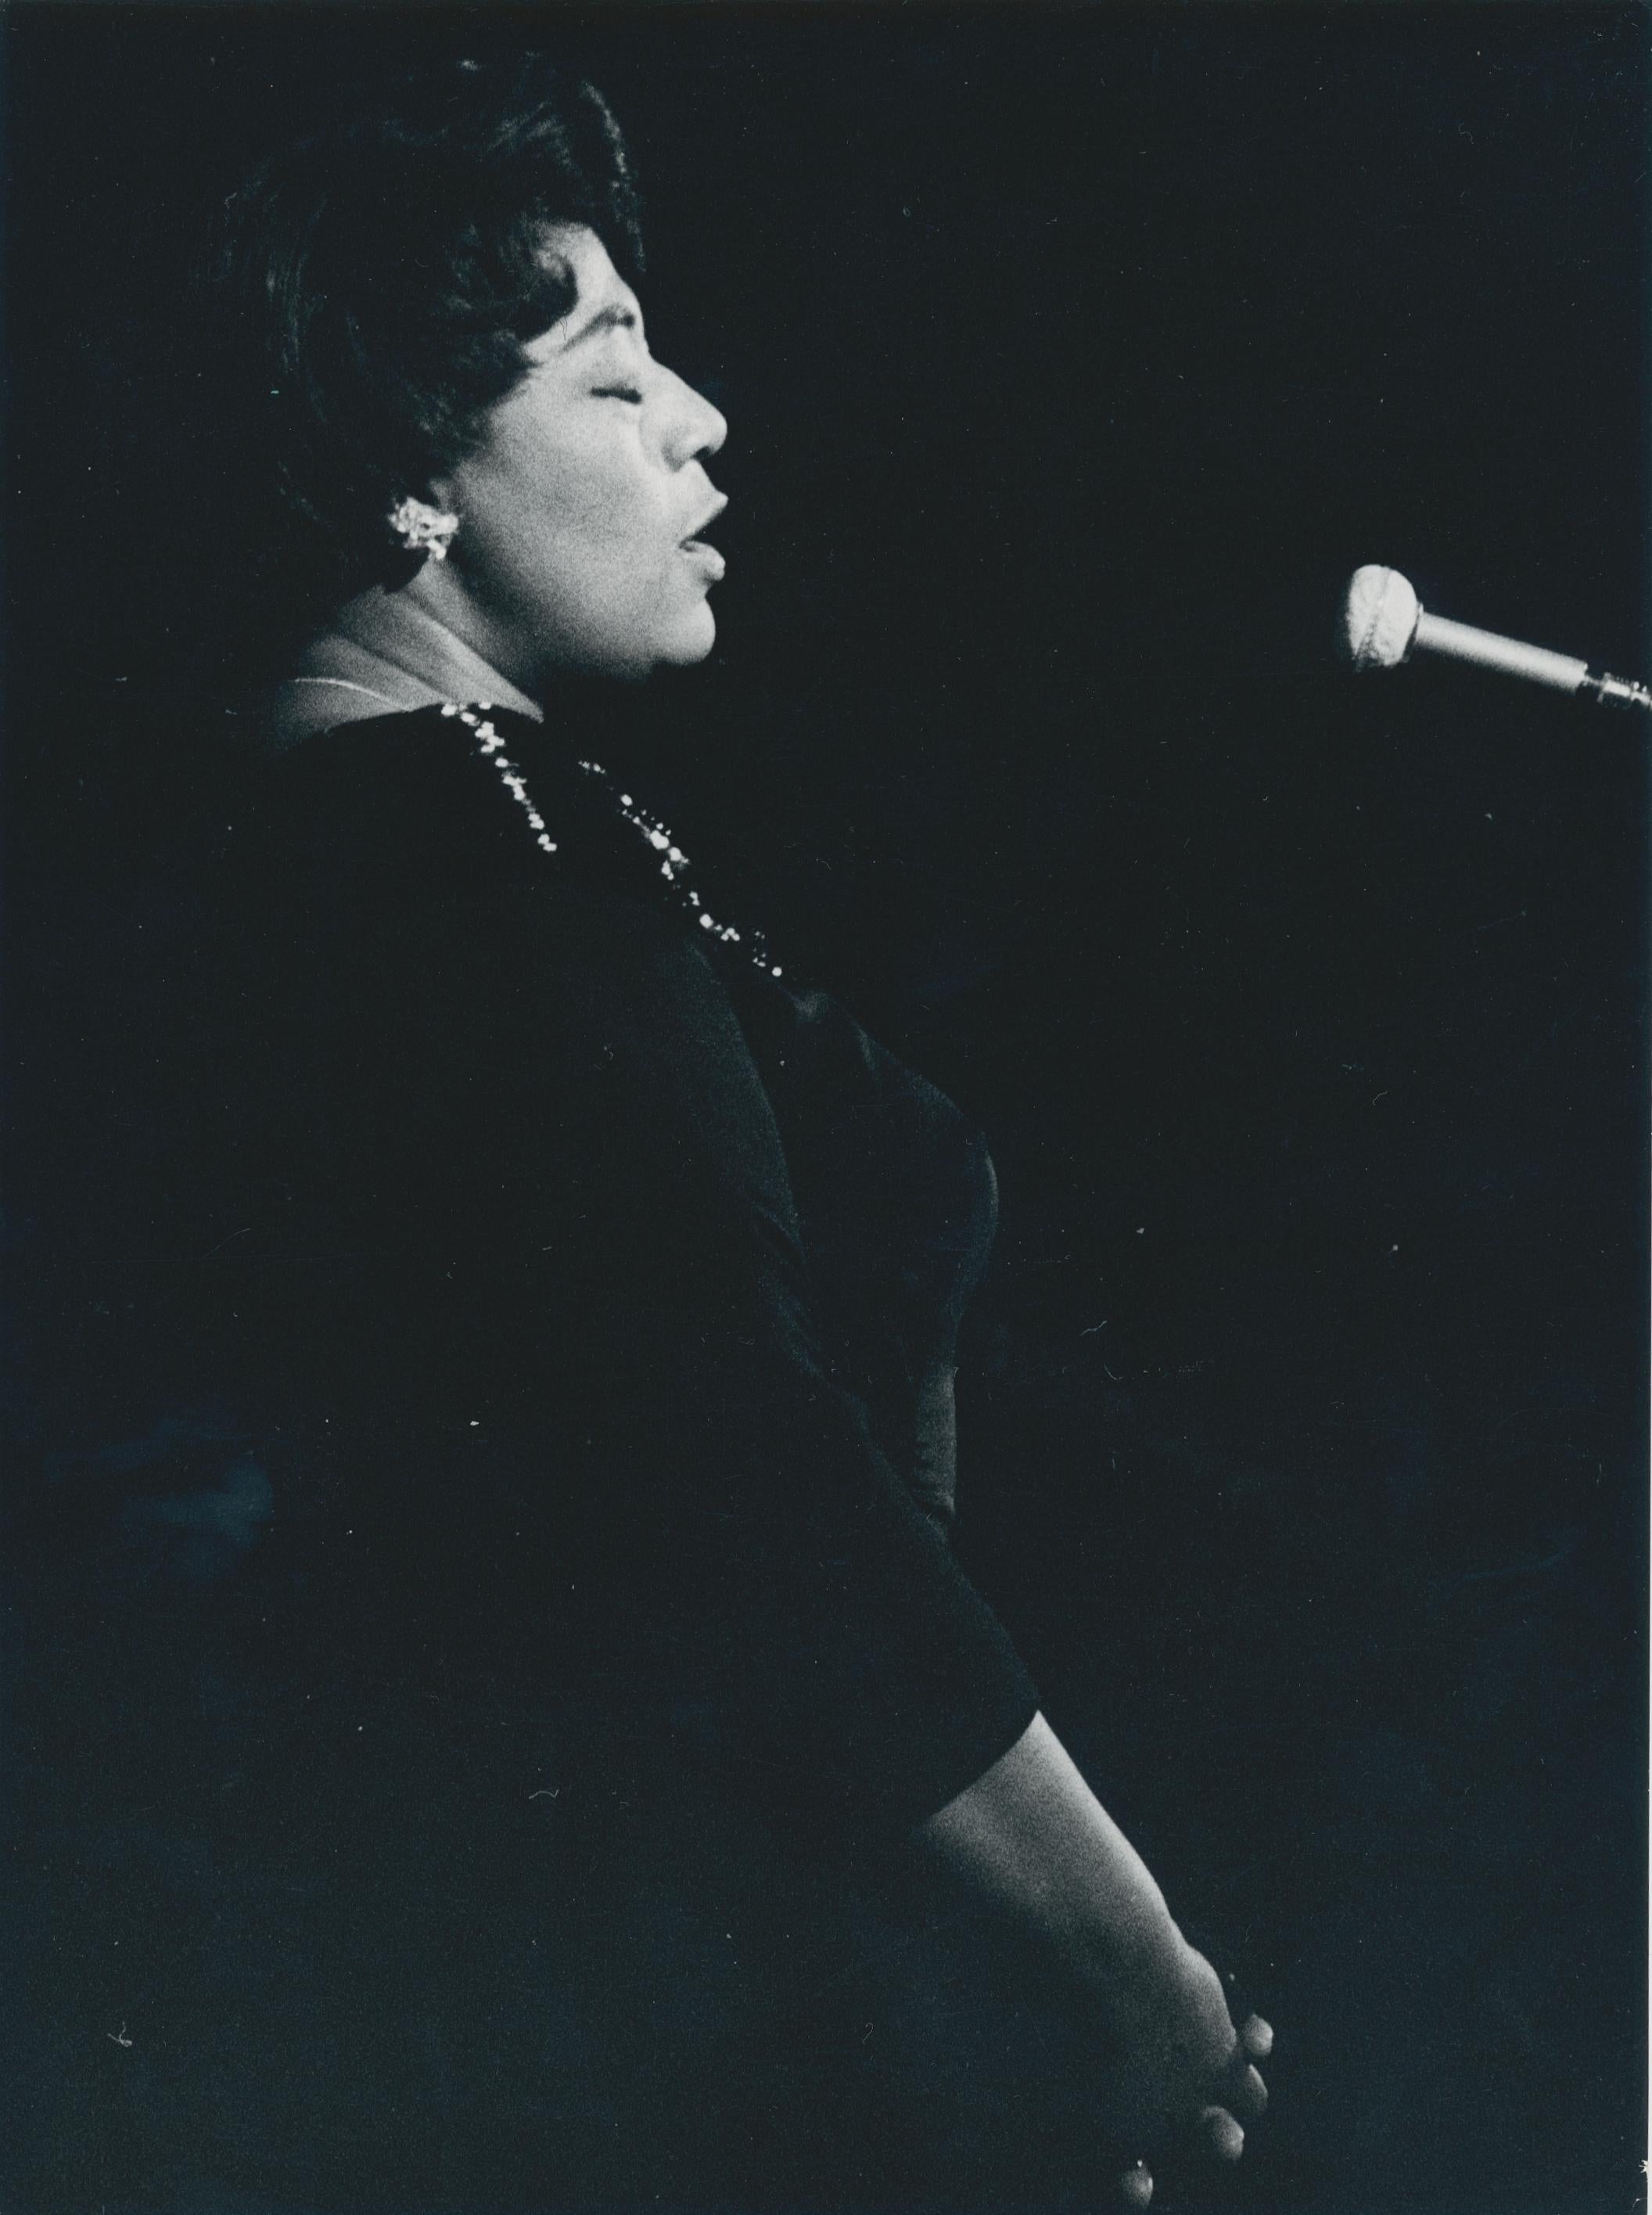 Unknown Black and White Photograph – Ella Fitzgerald auf der Bühne, schwarz-weiß, unbekanntes Datum